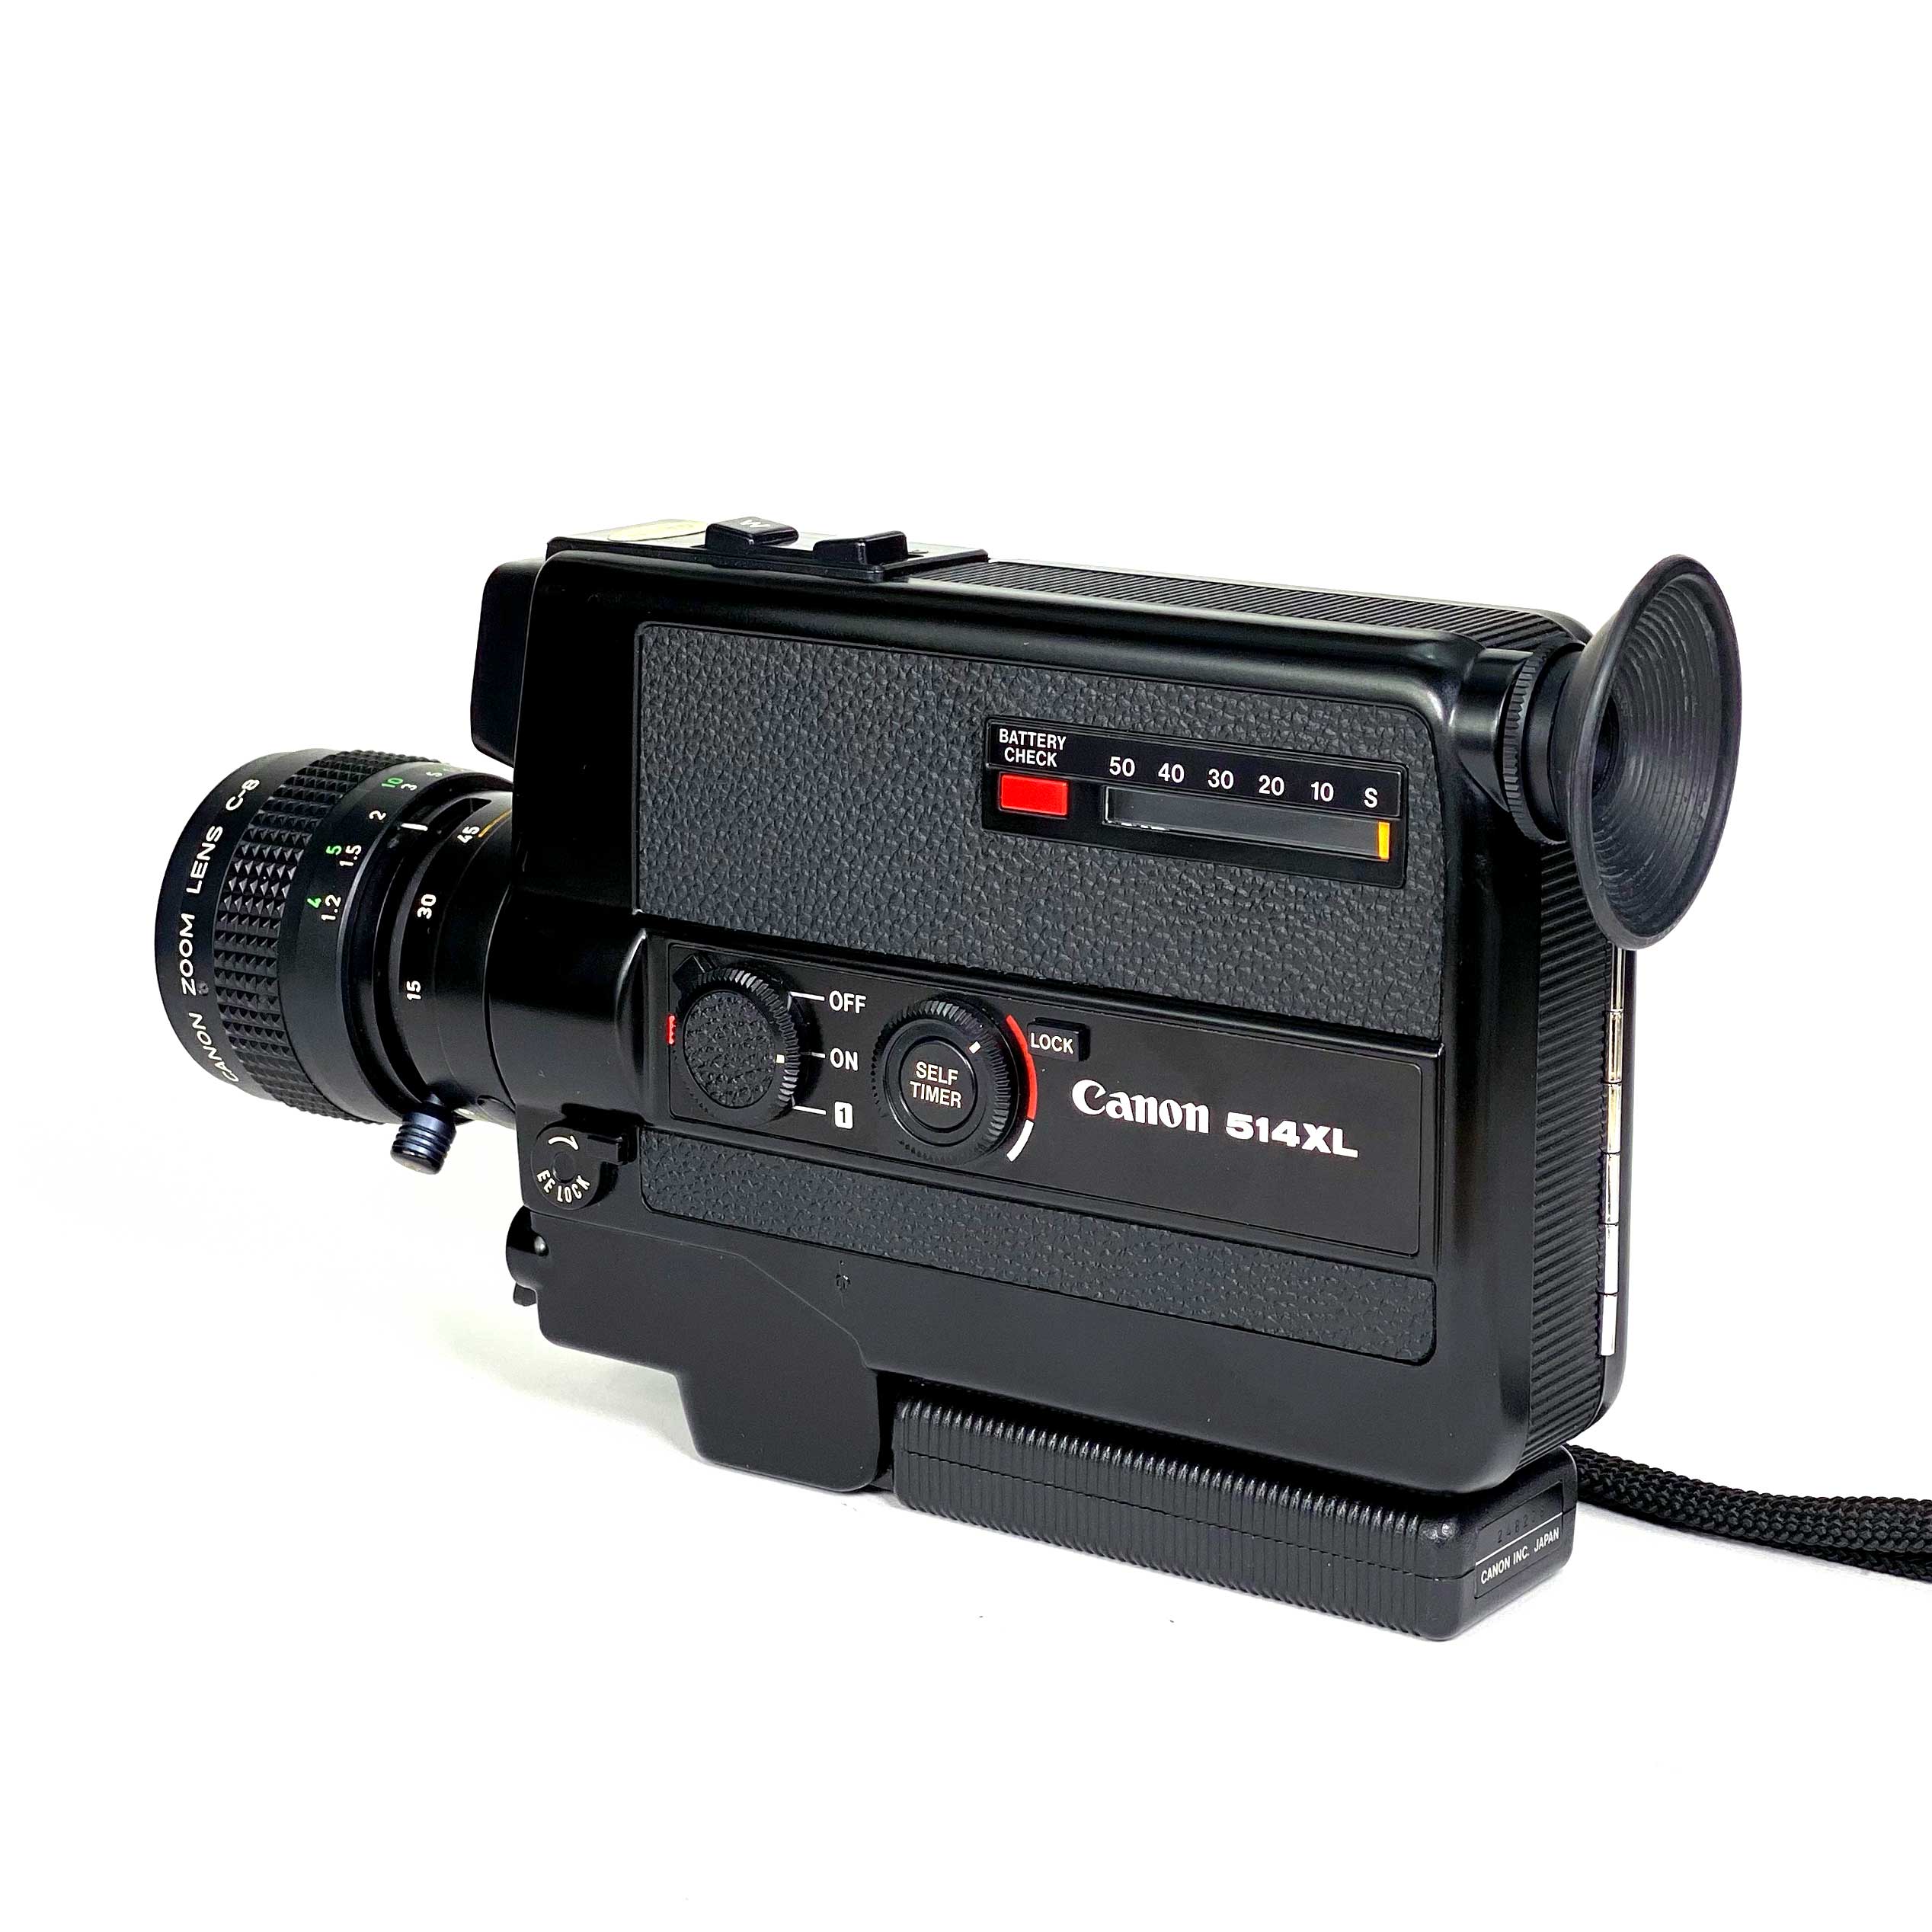 【動作〇】Canon 514XL 8ミリカメラ ビデオカメラ〇付属品